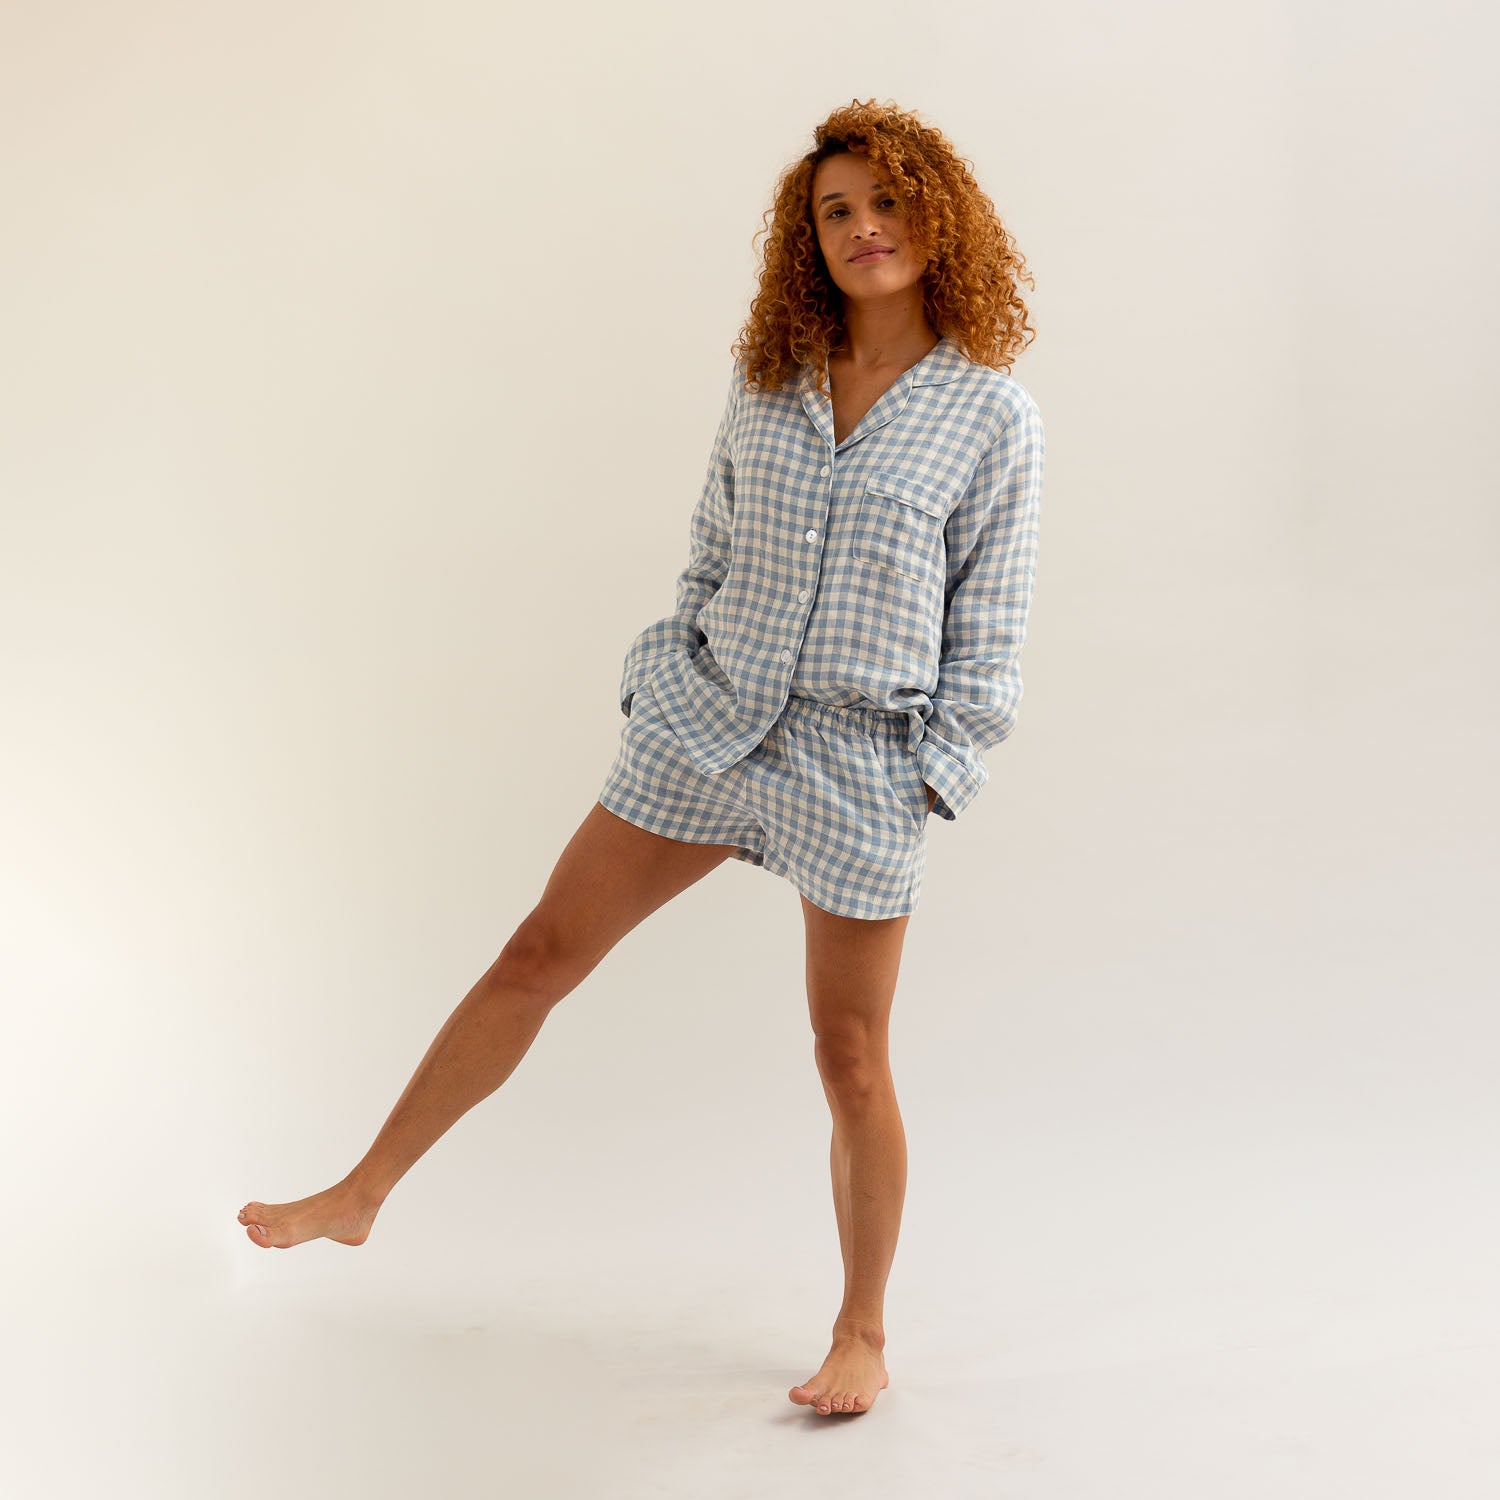 Warm Blue Gingham Linen Pyjama Shorts Set - Piglet in Bed